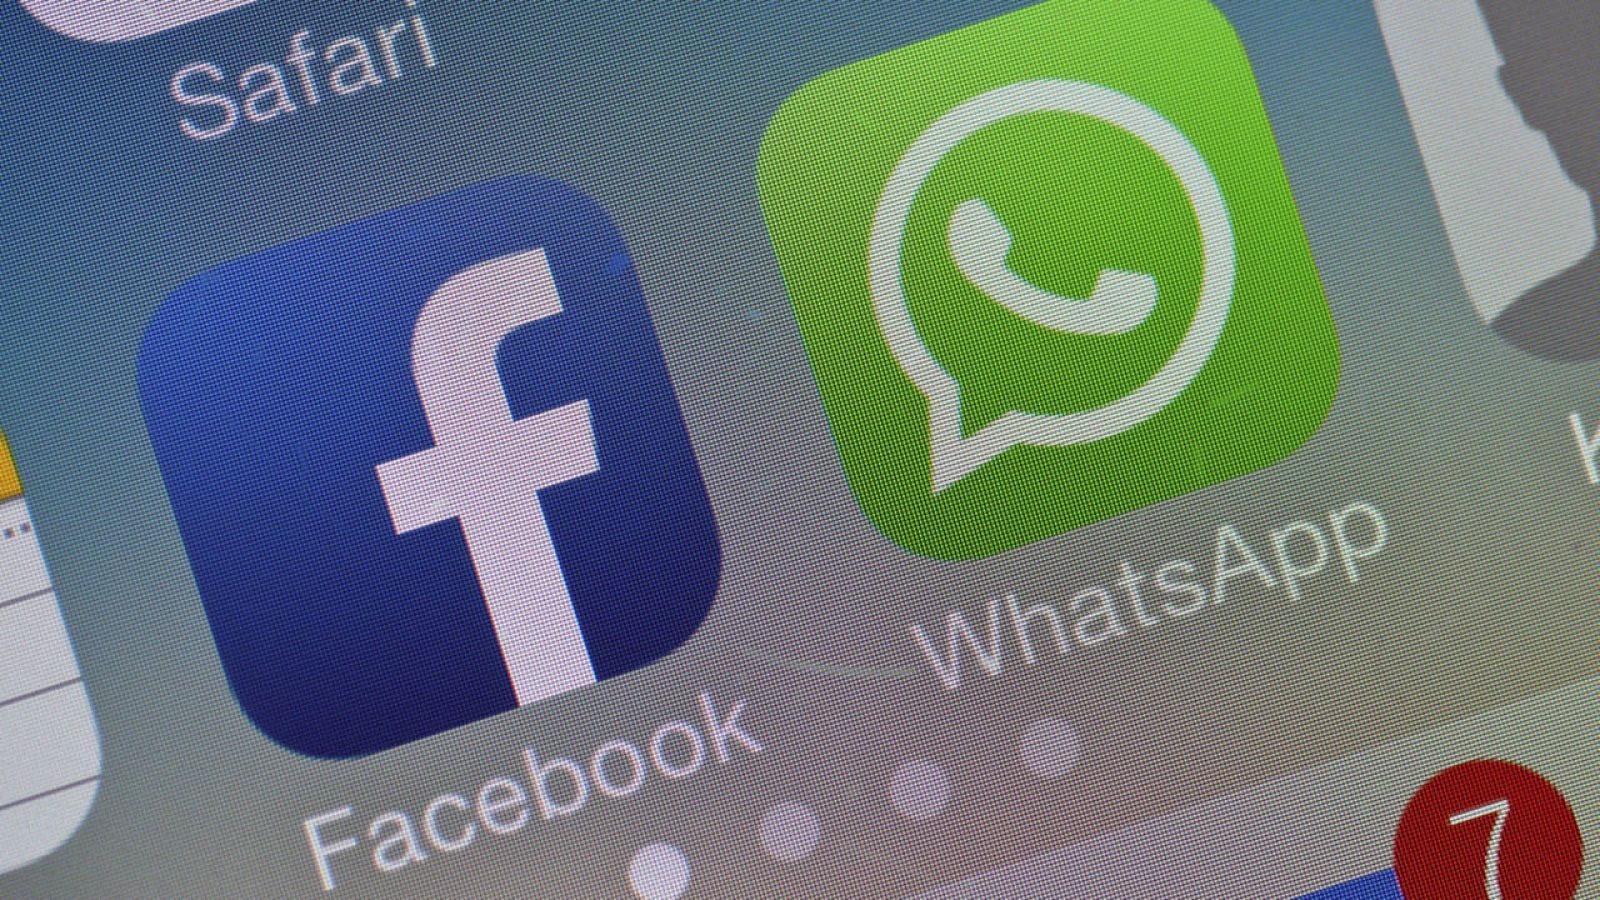 "Ésta es una práctica típica entre compañías que son adquiridas por otras", explica Whatsapp en un comunicado.